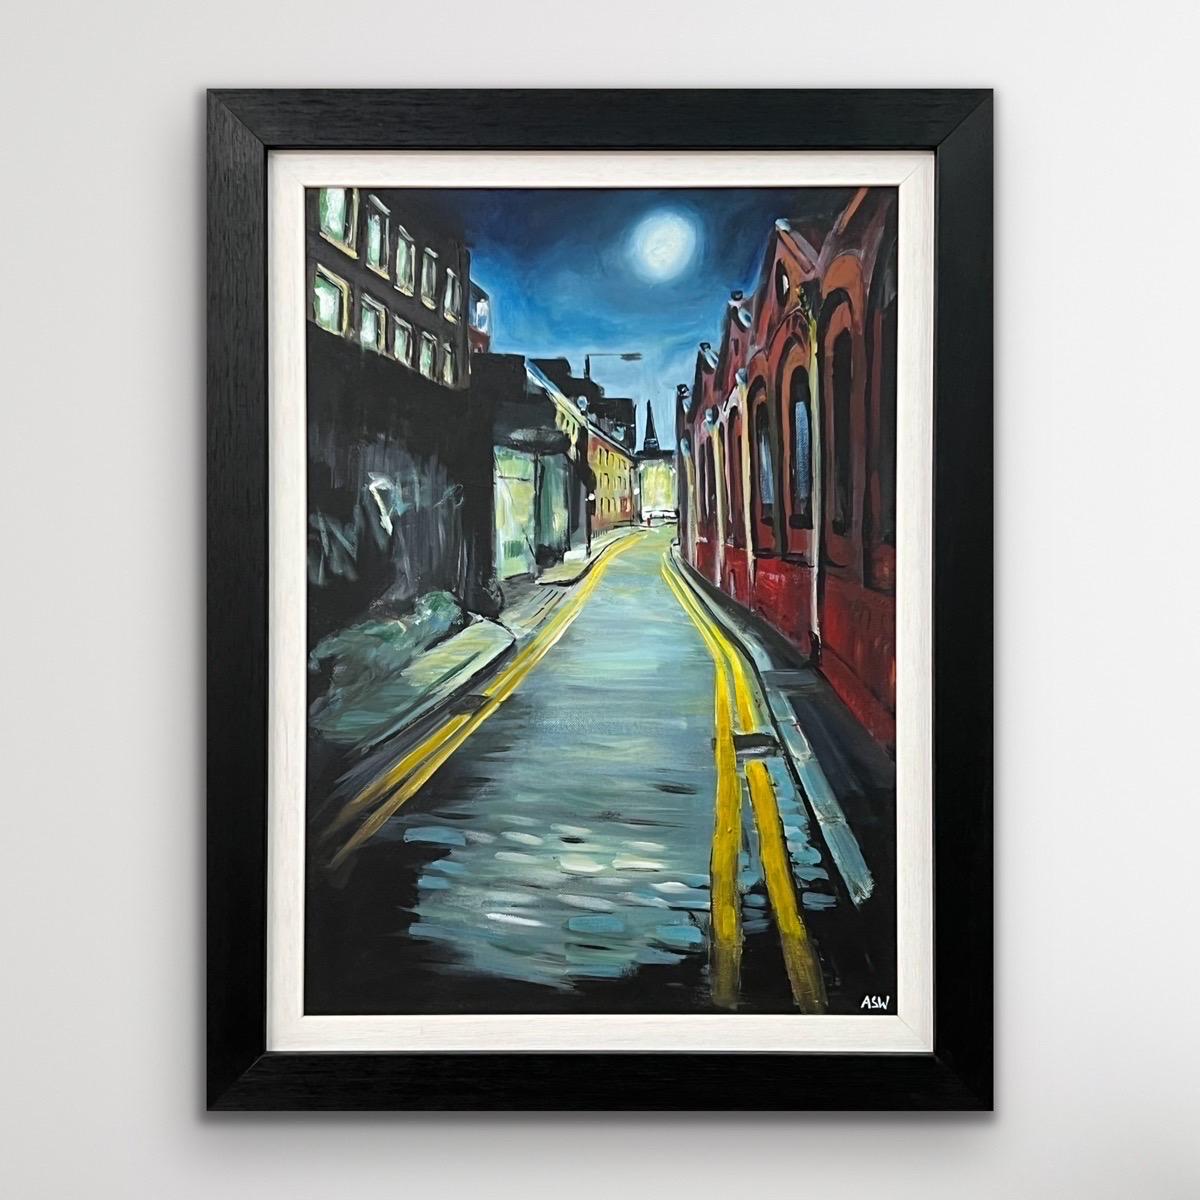 Atmosphärisches Gemälde der Straße in Whitechapel London City des britischen Künstlers (Englische Schule), Mixed Media Art, von Angela Wakefield